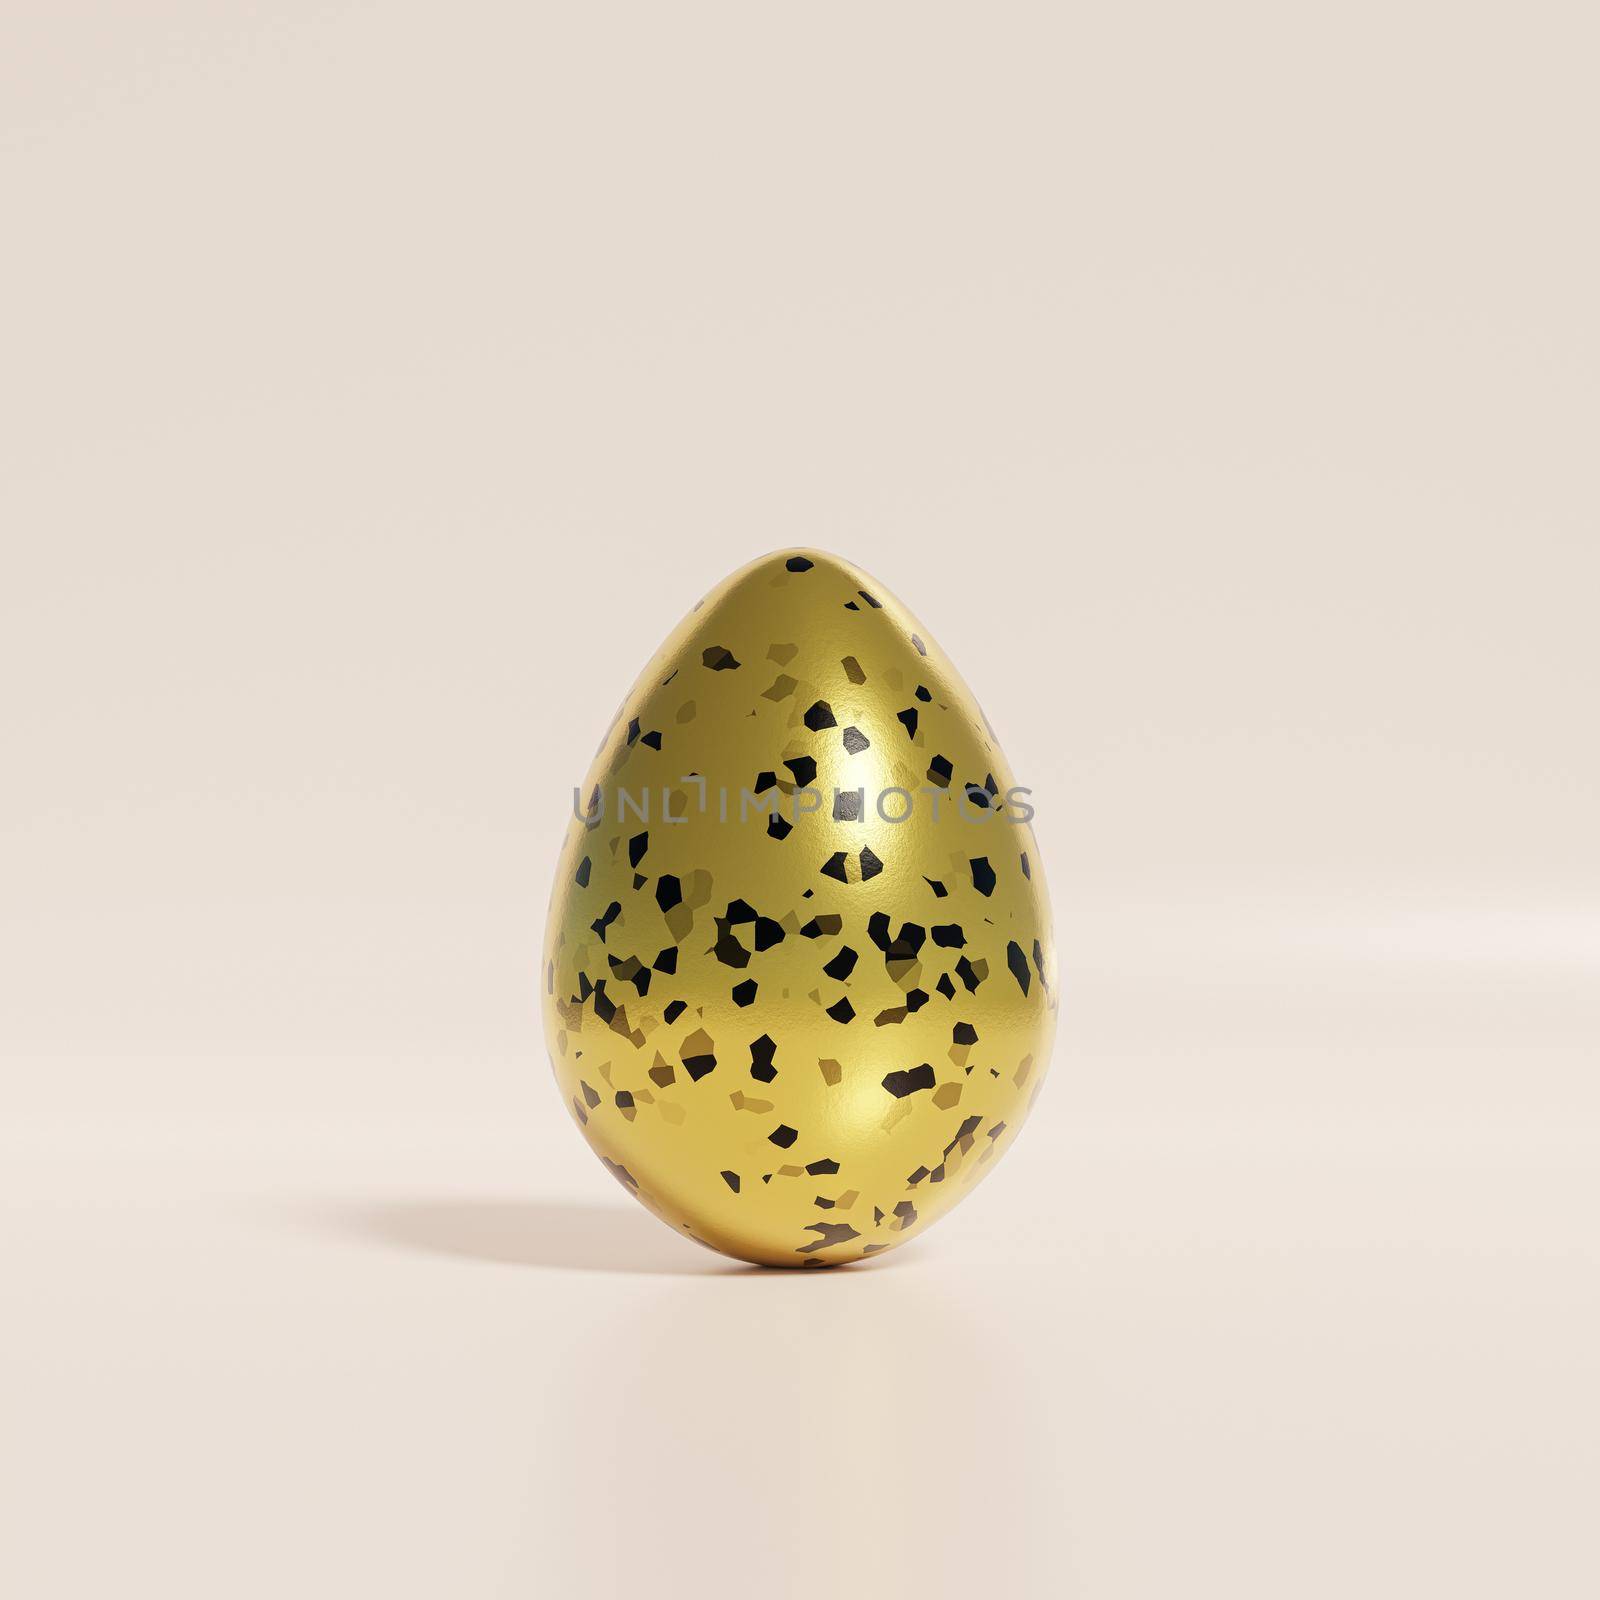 Golden Easter egg with black terrazzo pattern on beige background, spring April holidays card, 3d illustration render